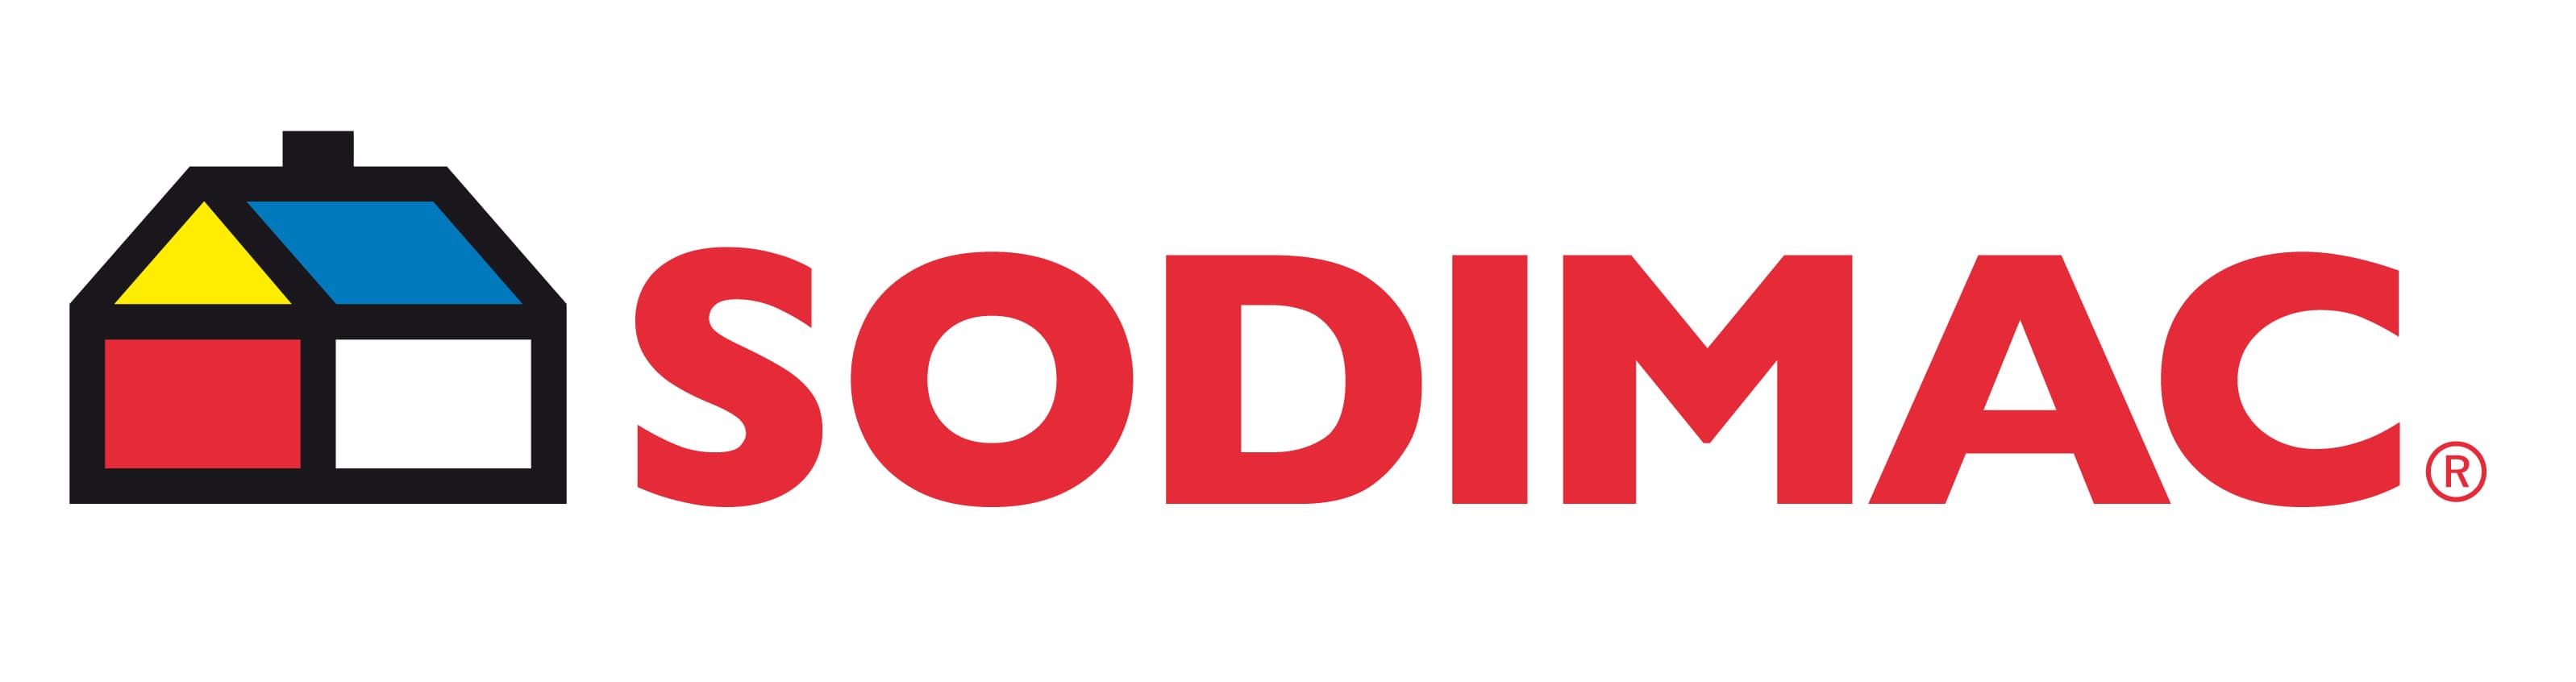 Sodimac Brand Logo